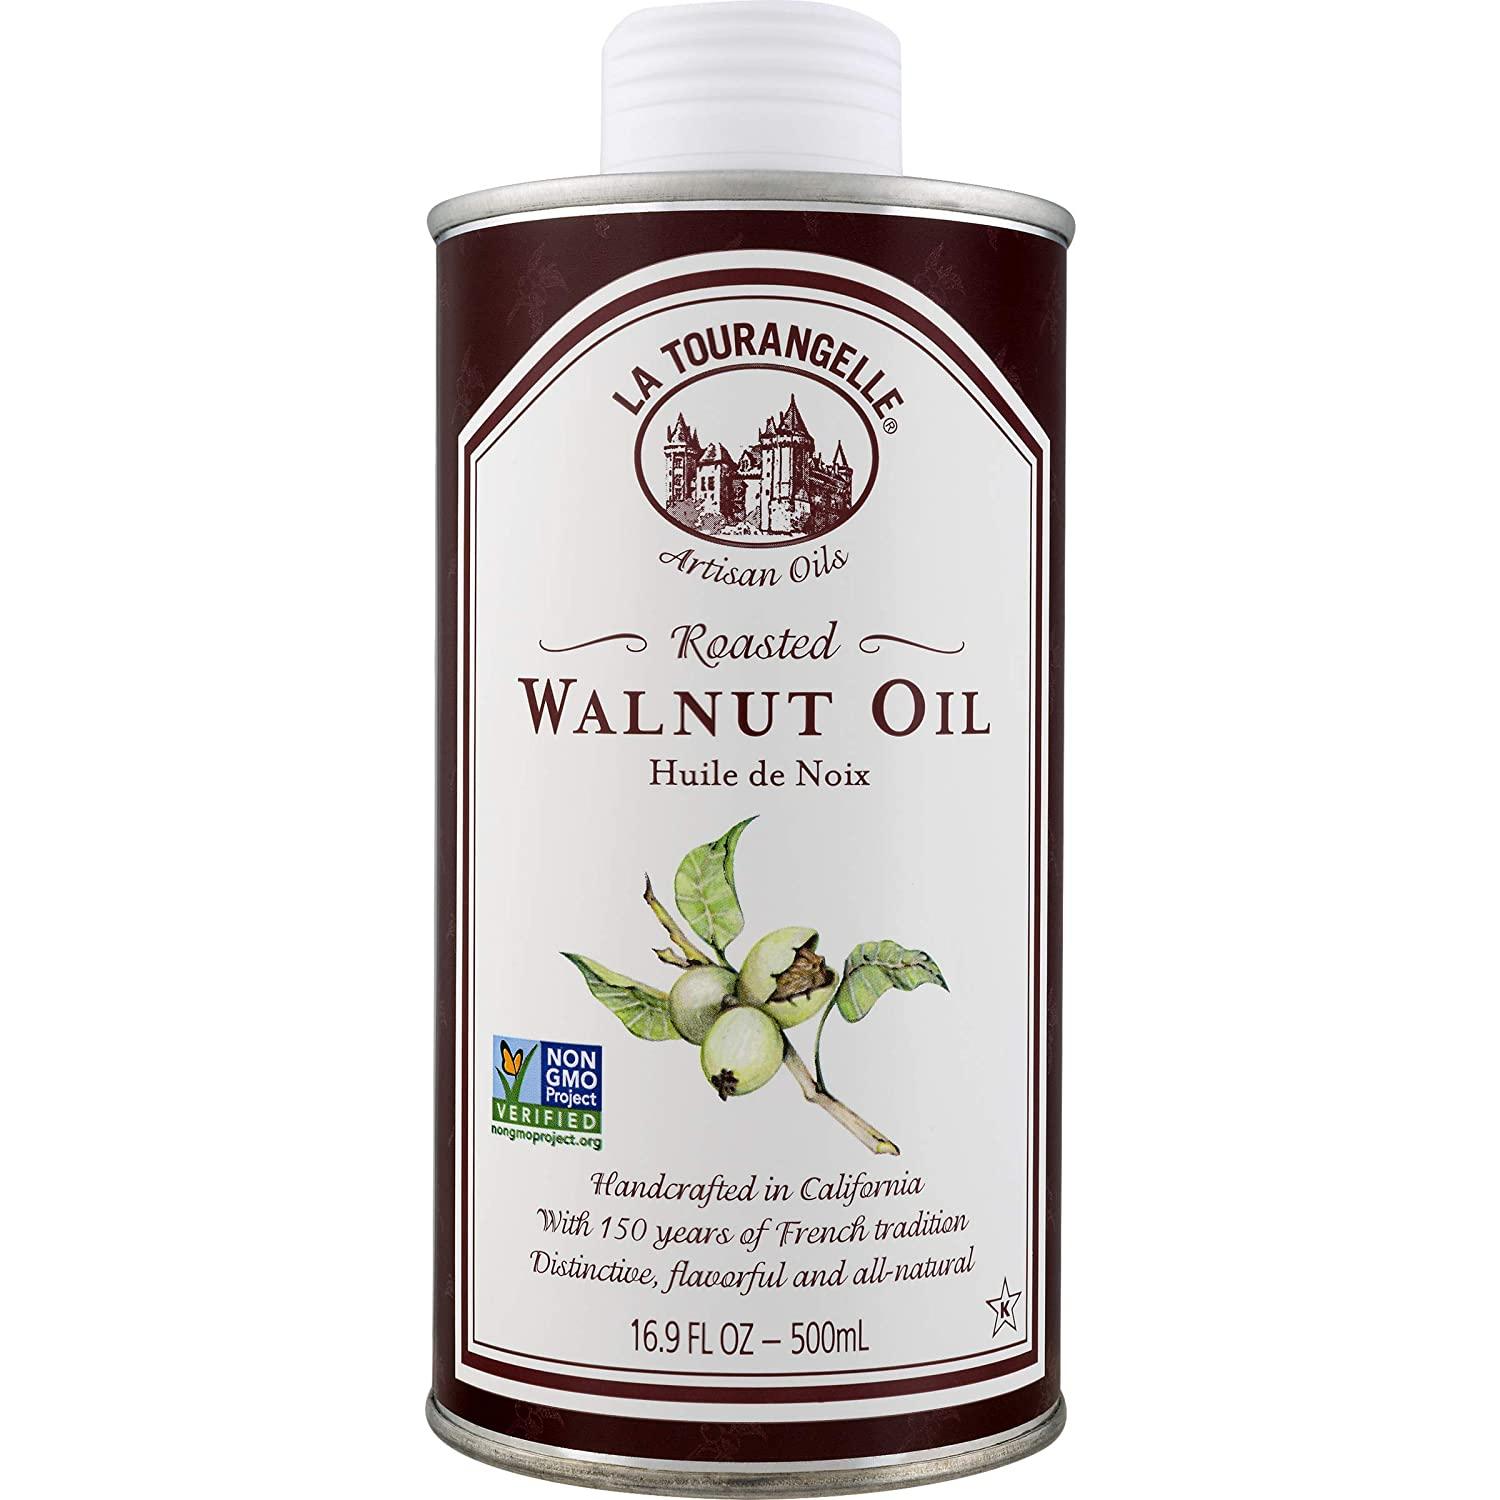 La Tourangelle Roasted Walnut Oil - 16.9 fl oz bottle